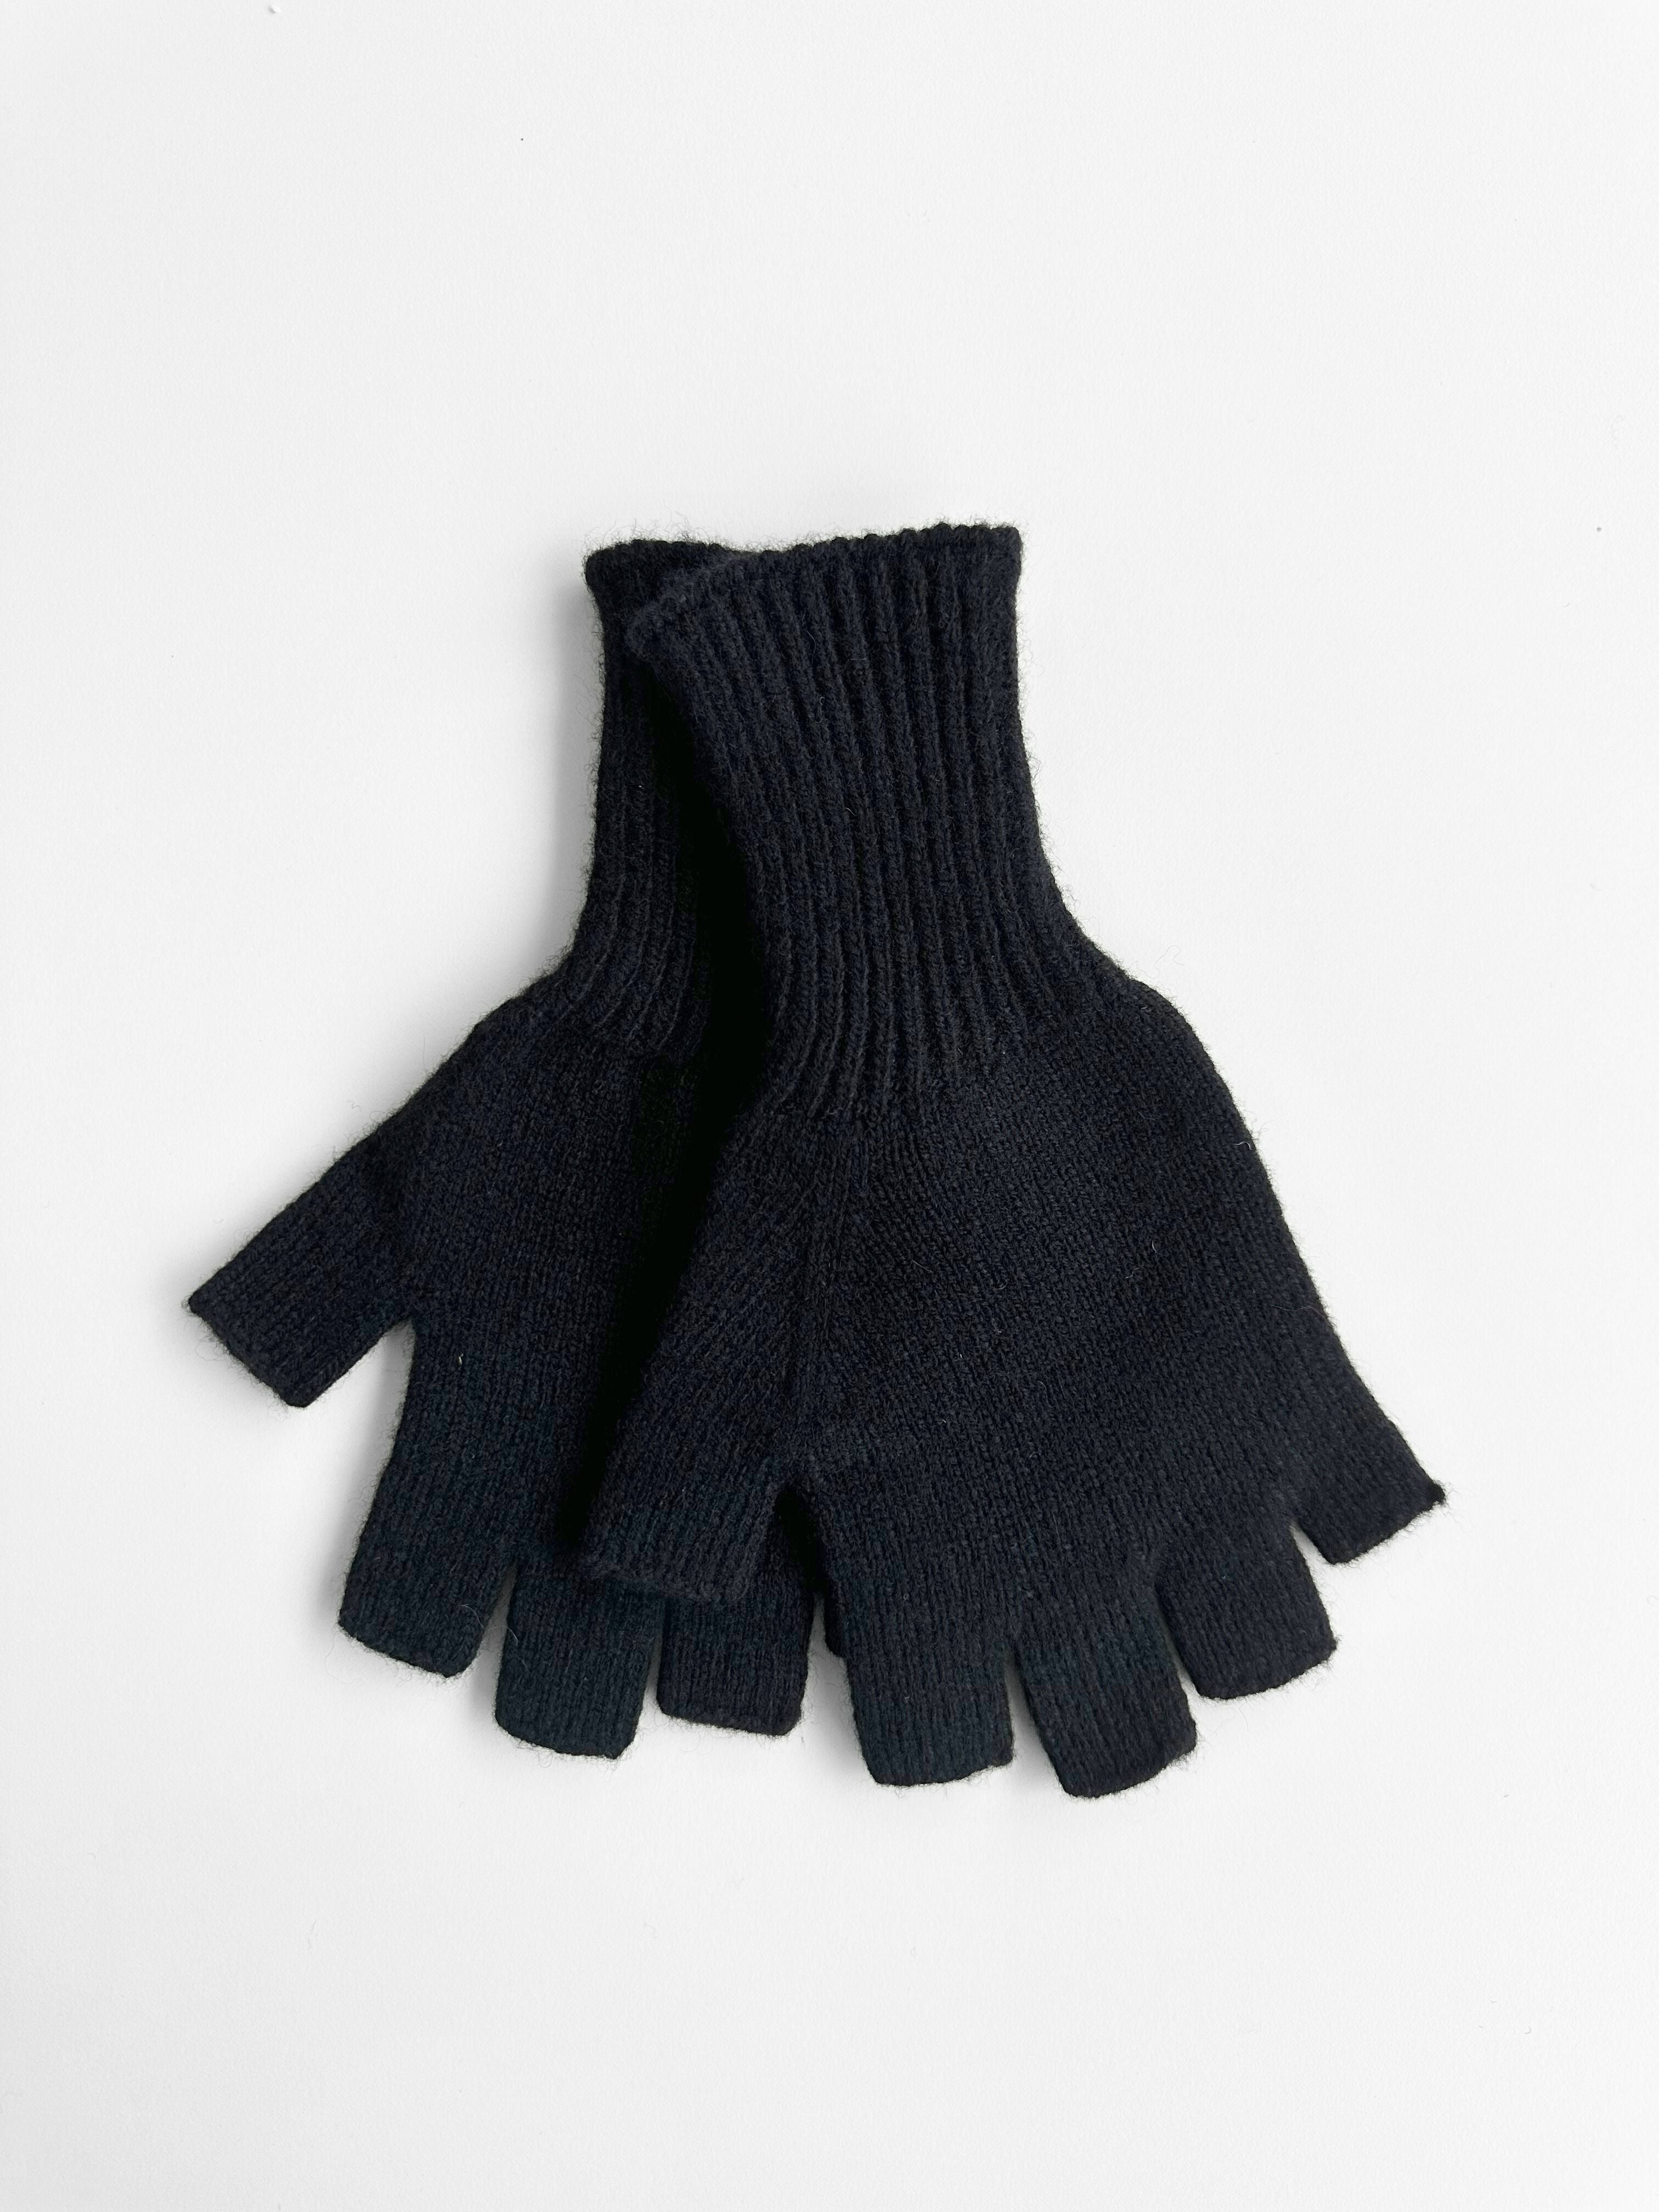 Lambswool Fingerless Gloves - Black